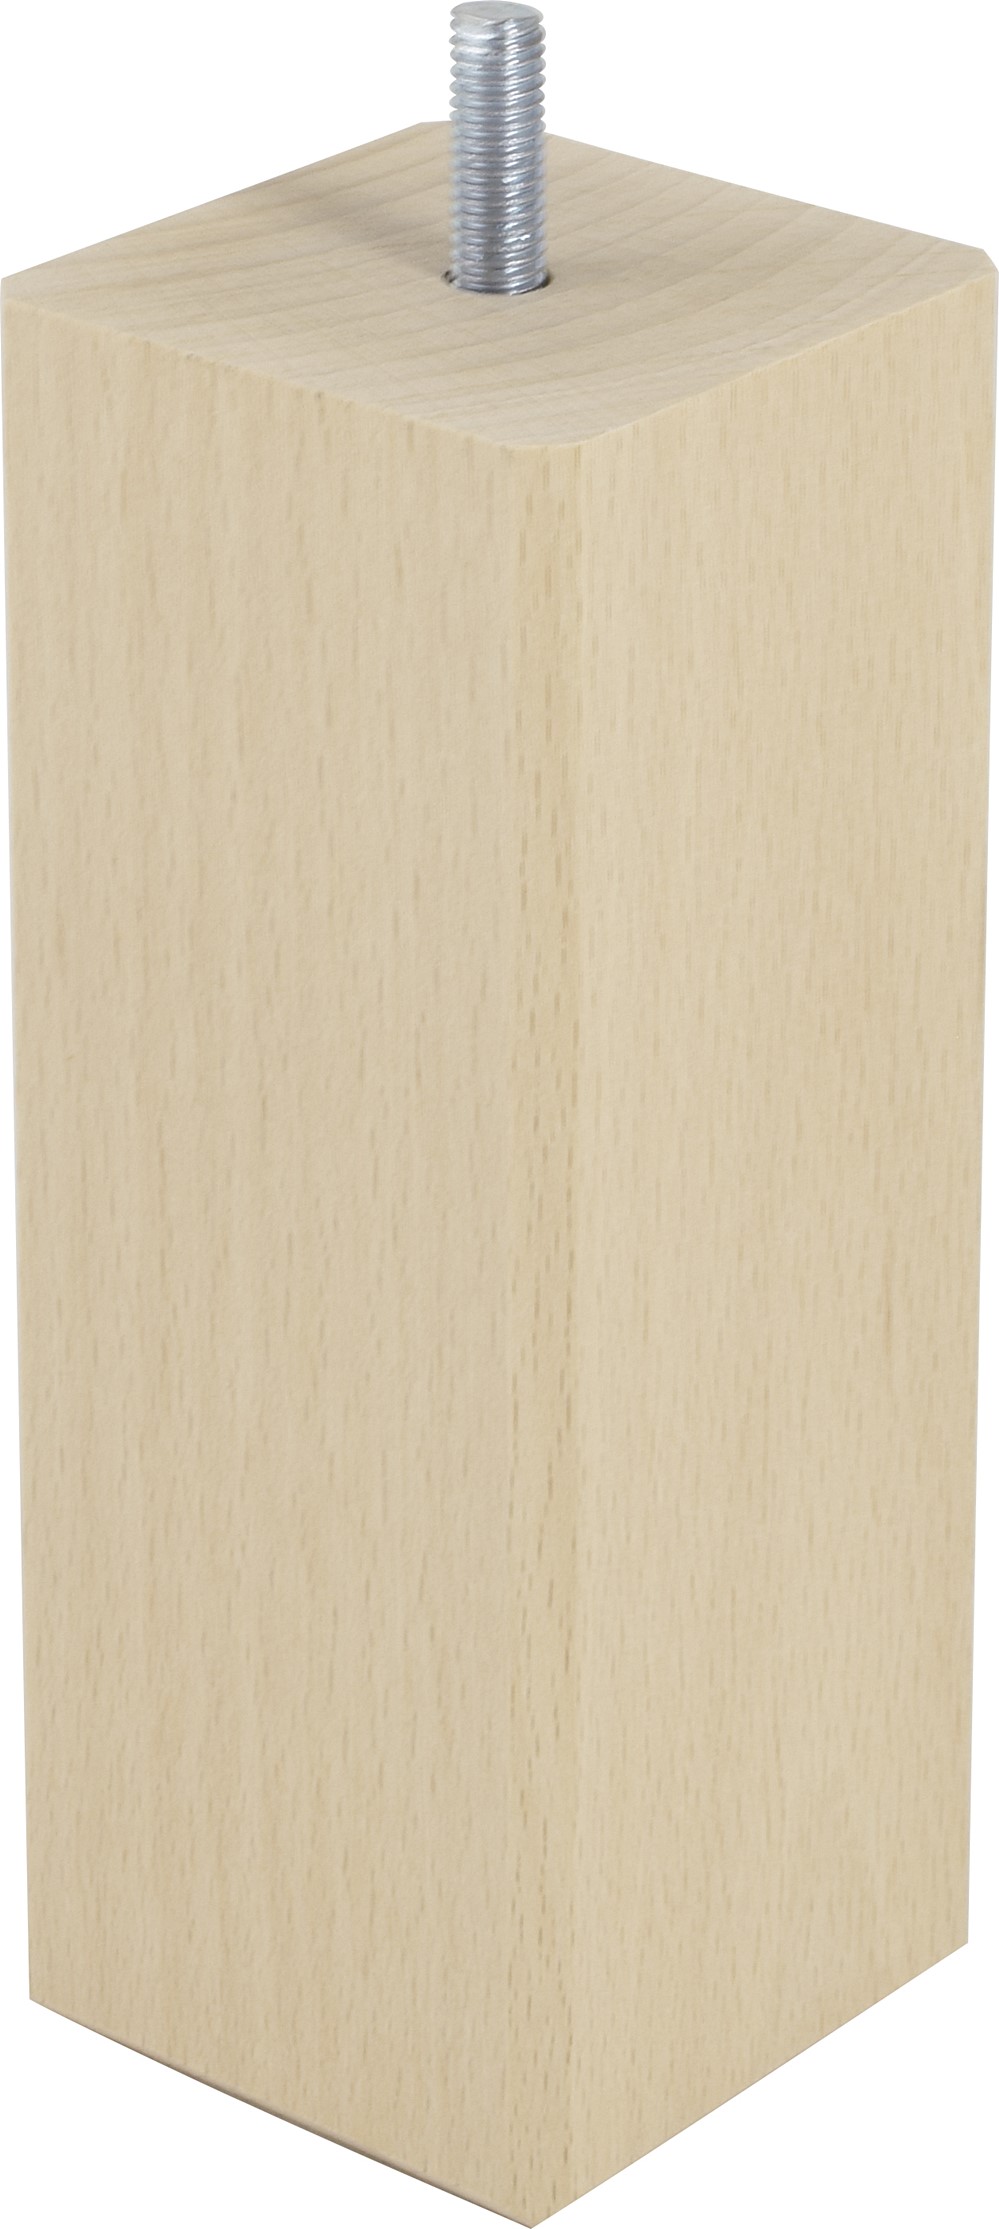 Pied de lit carré bois brut H.150 60x60mm - BAR PLUS